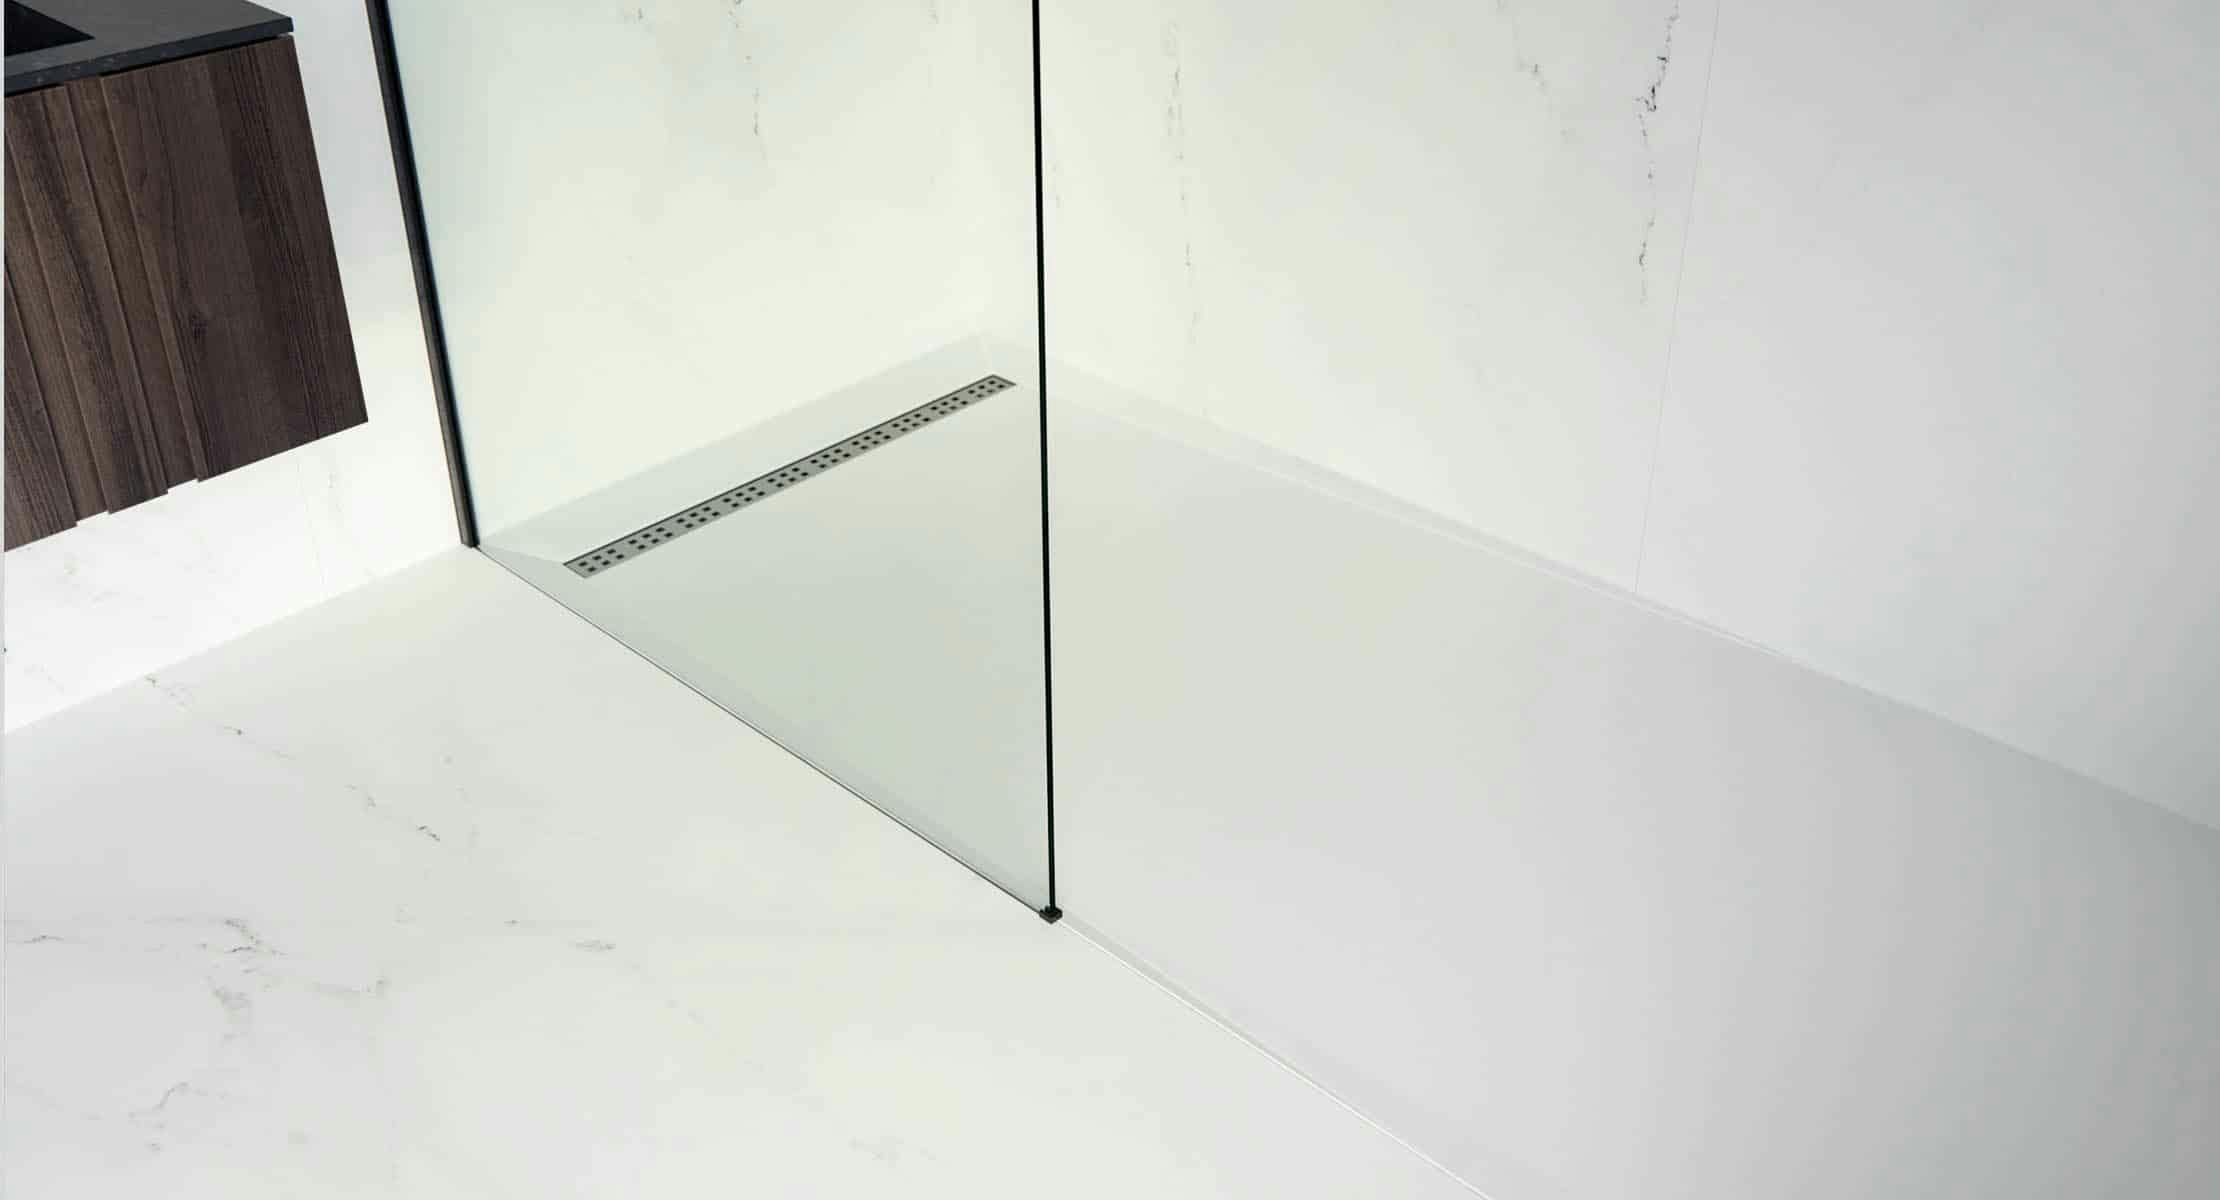 Numéro d'image 33 de la section actuelle de salle-de-bains-minimaliste de Cosentino France